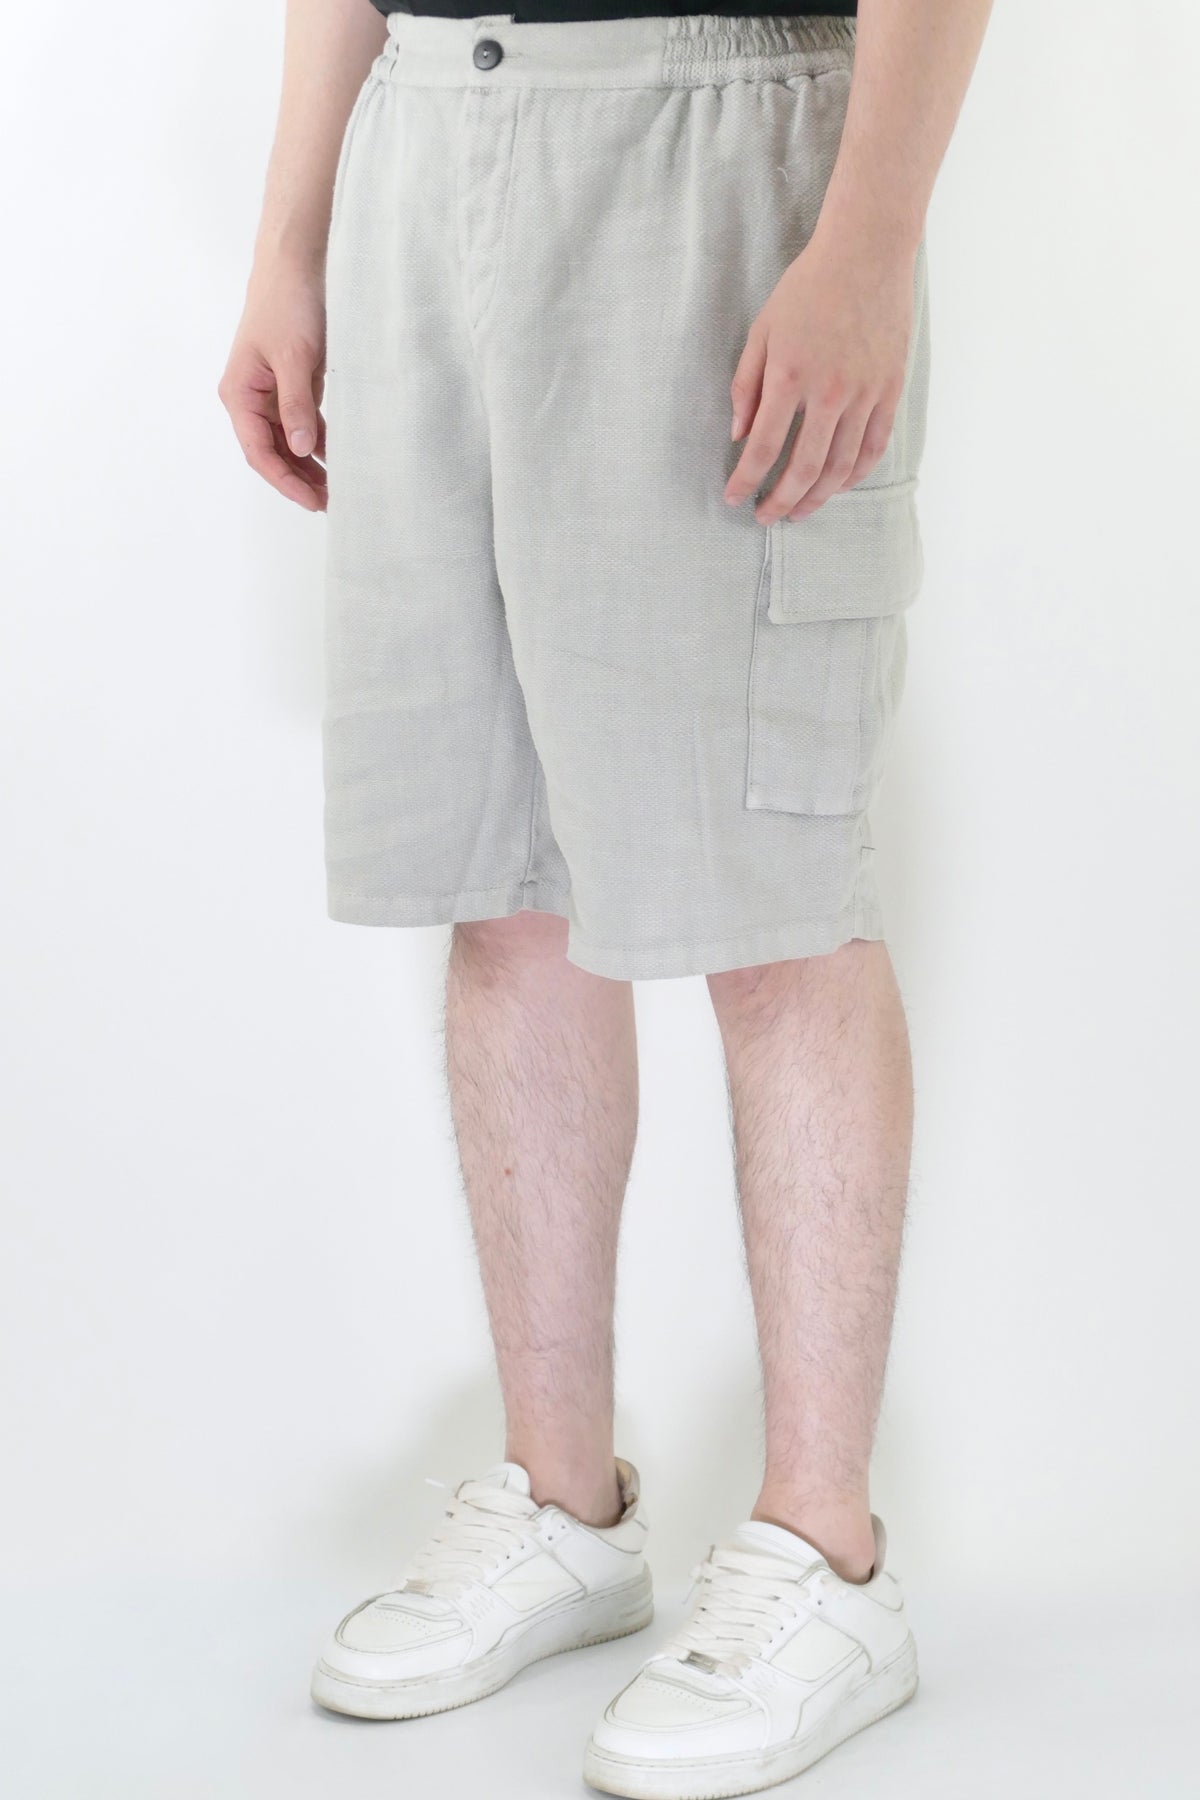 Athoa Bermuda Cargo Shorts - Grey